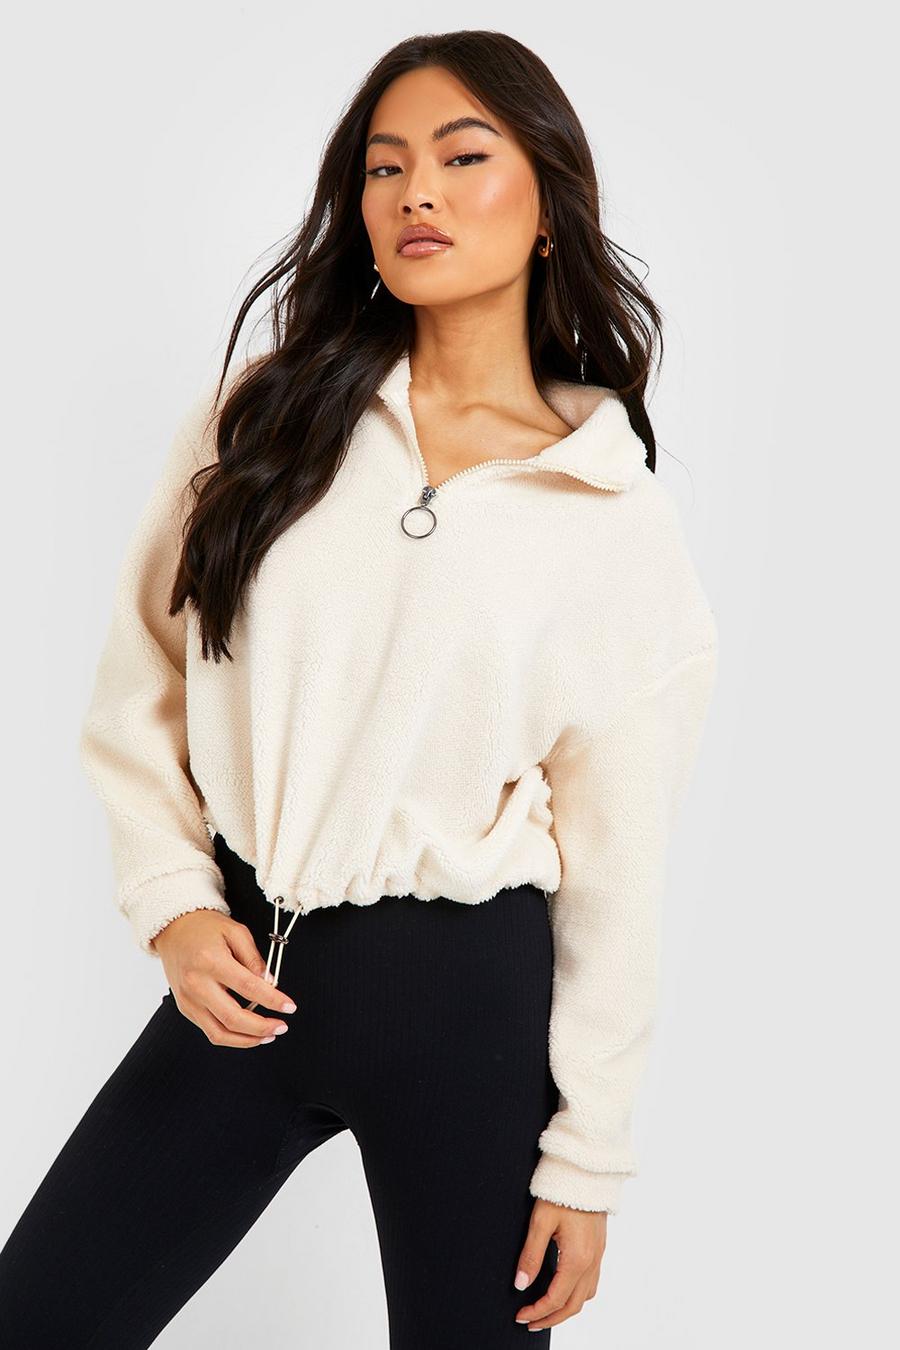 White 40                  EU Zara sweatshirt discount 70% WOMEN FASHION Jumpers & Sweatshirts Casual 